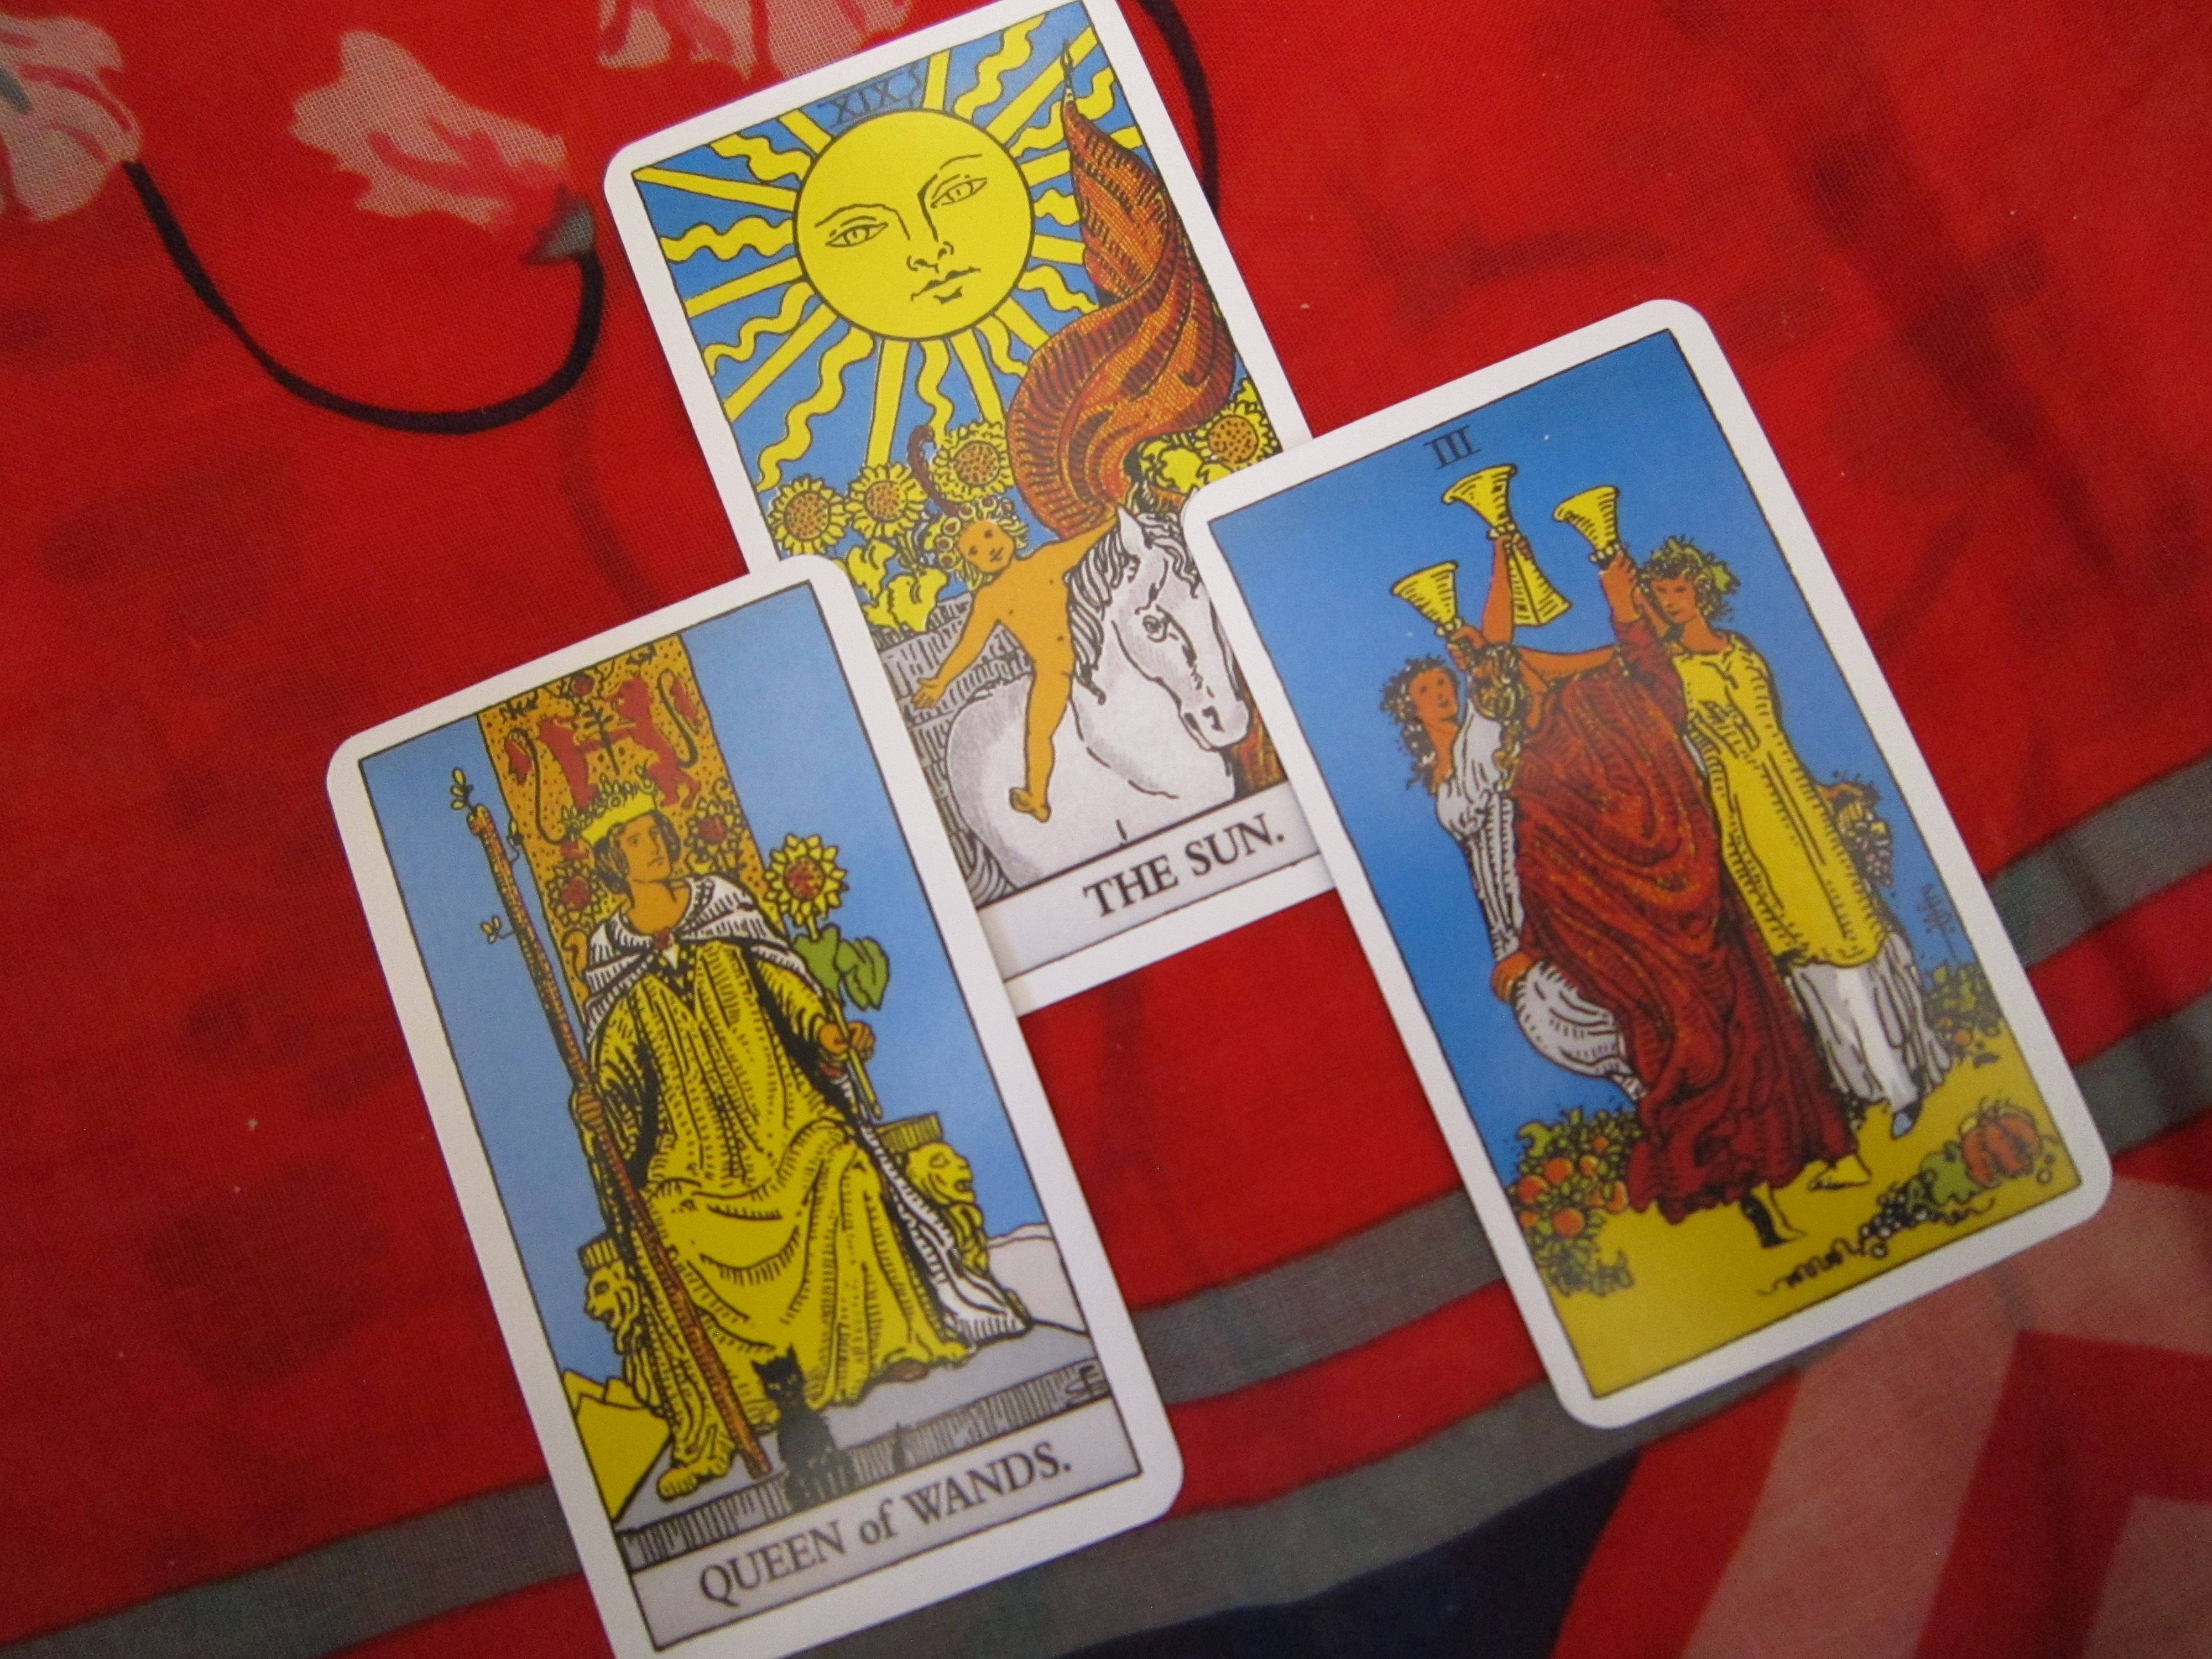 Three tarot cards displayed during a tarot reading.